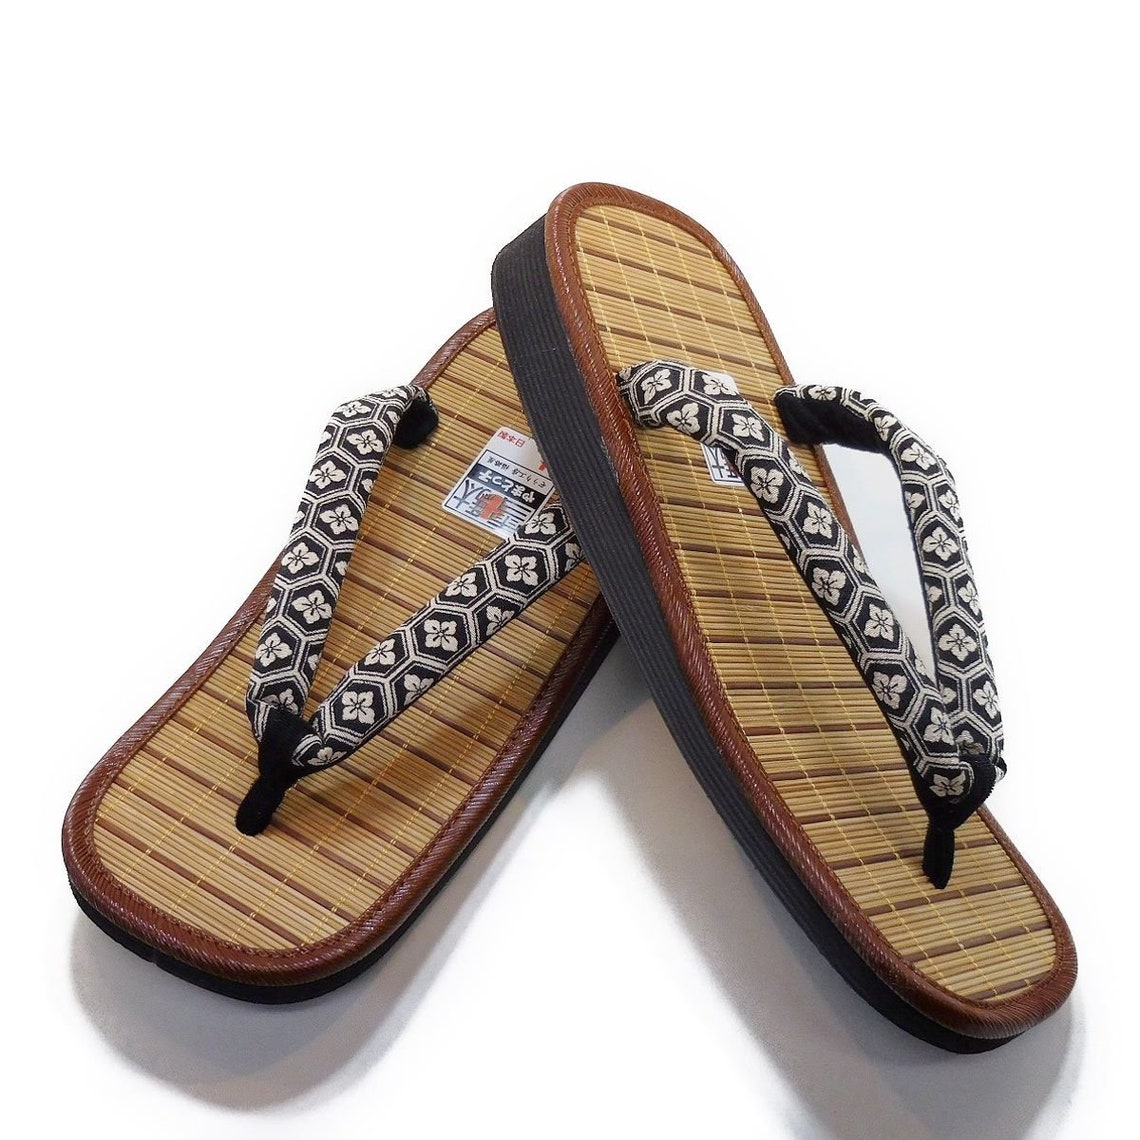 Japanese Traditional Sandal Zori Setta for Men's US Size 9 | Etsy